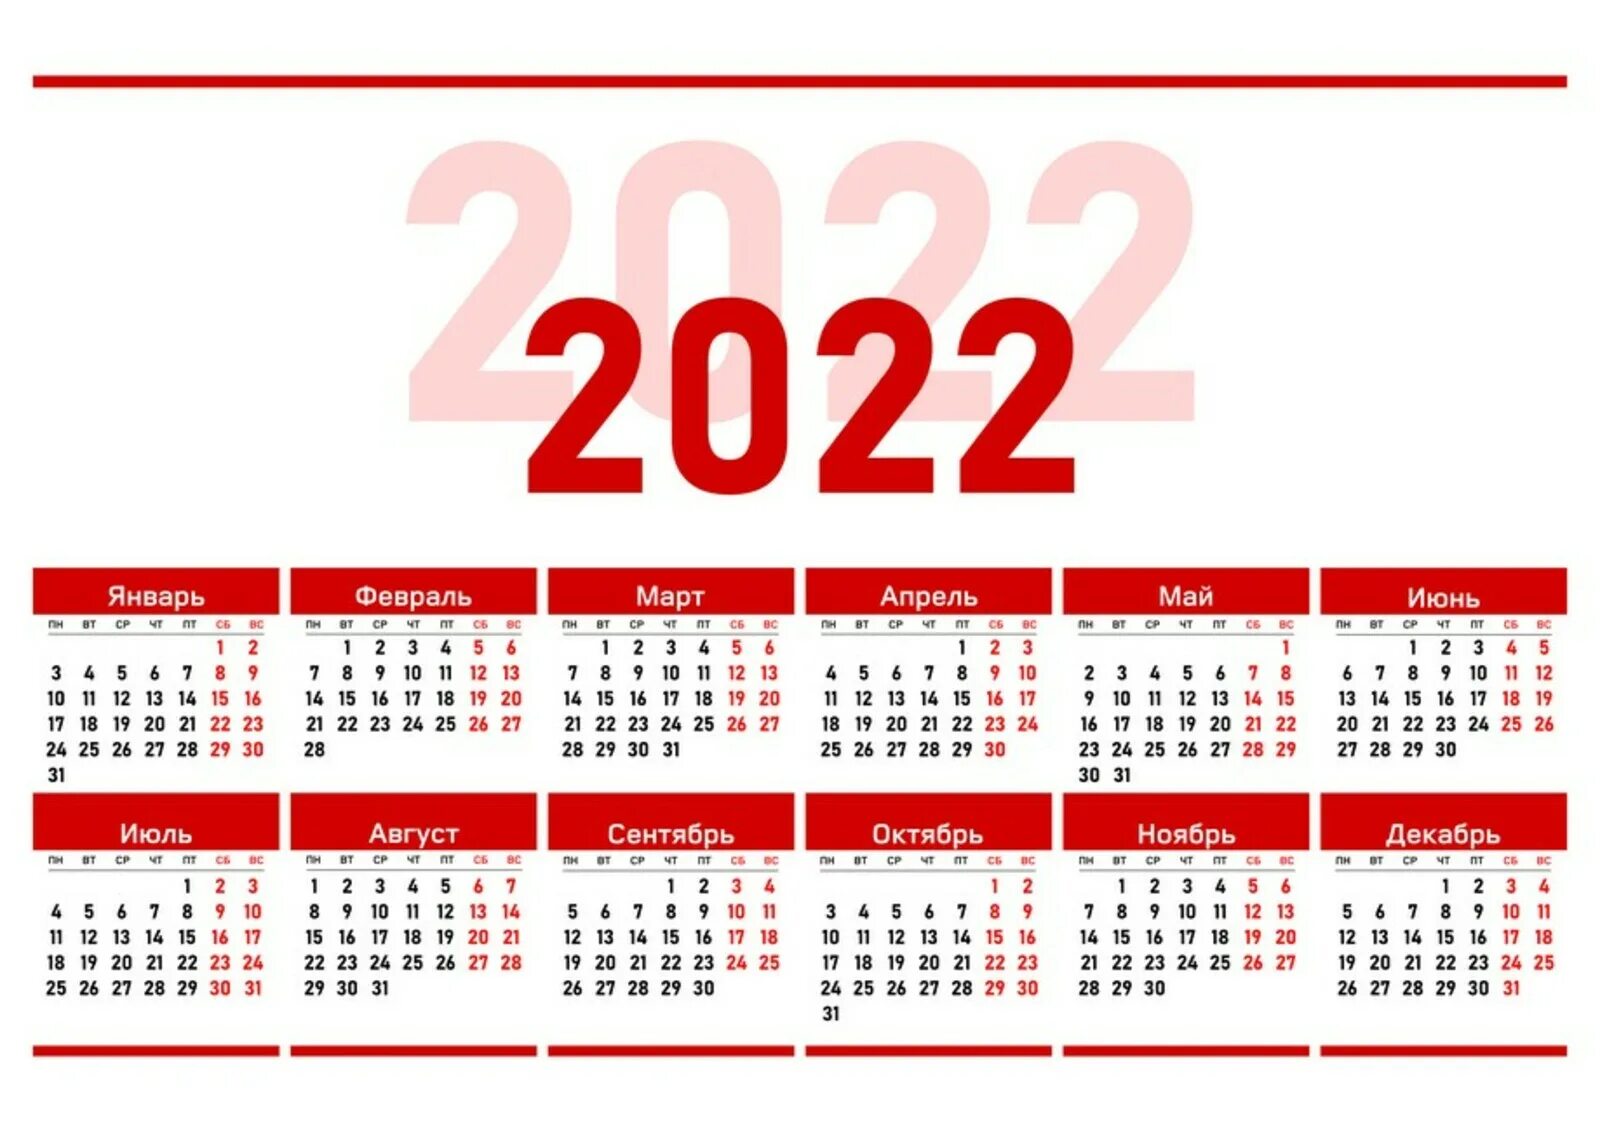 Календарь на 2022 год ЛНР. Официальные праздники 2022 года в России. Выходные дни в 2022 году в России. Рабочий календарь на 2022.